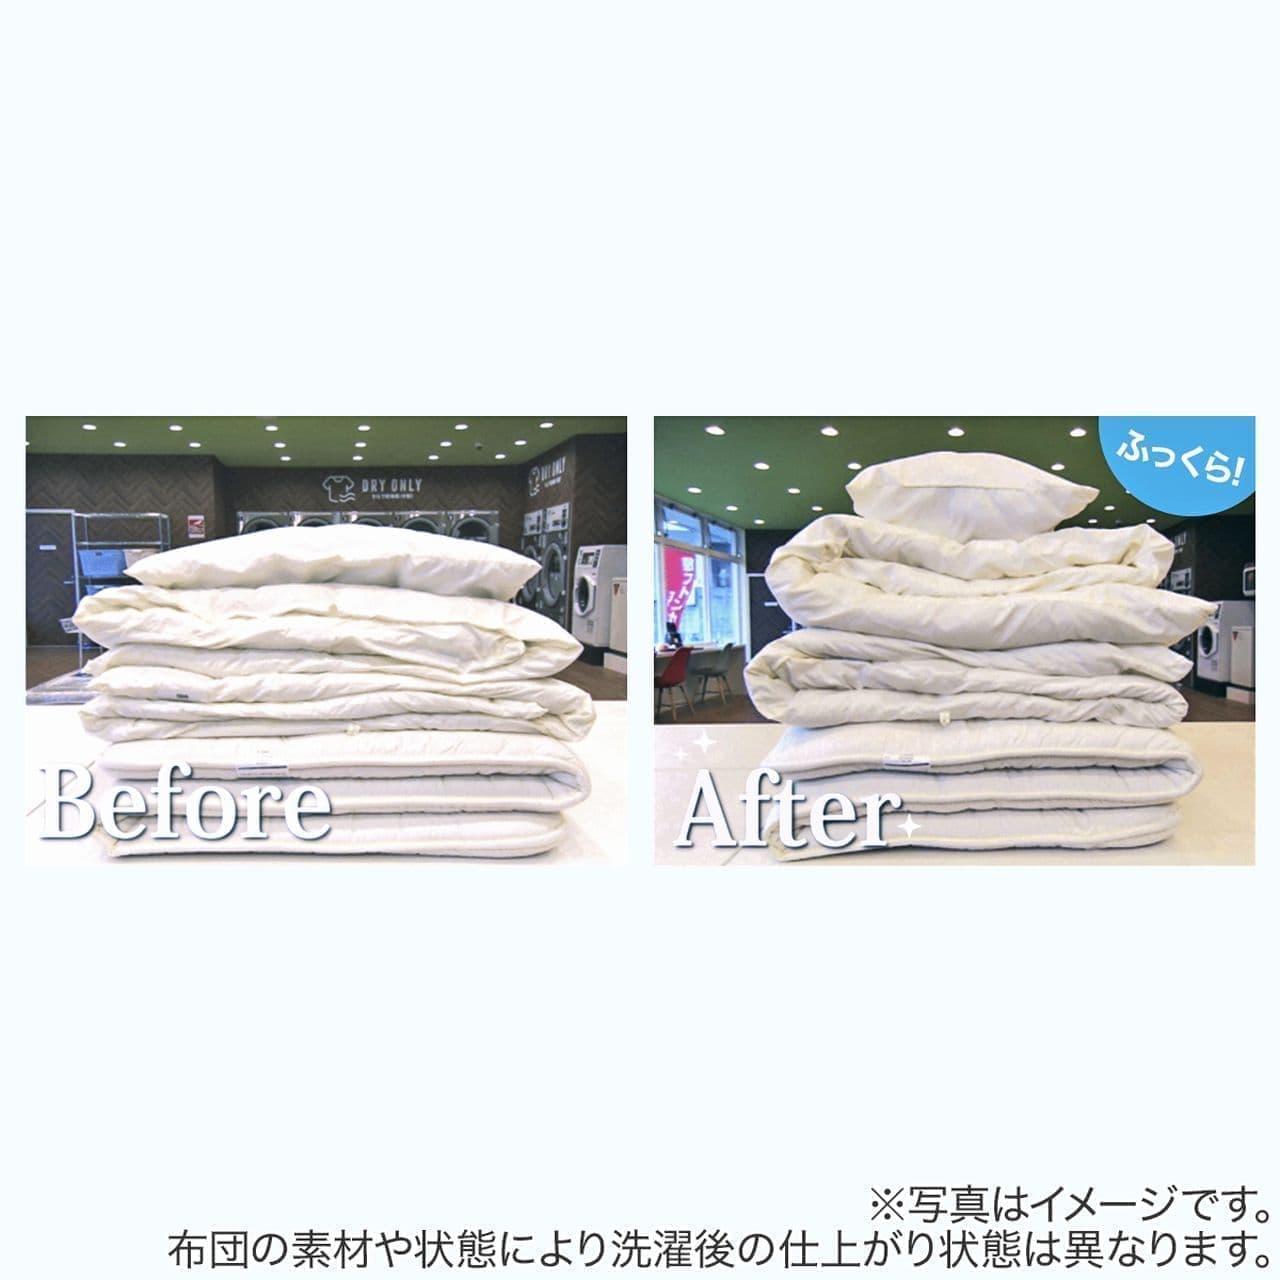 Nitori-net "Futon Washing Service